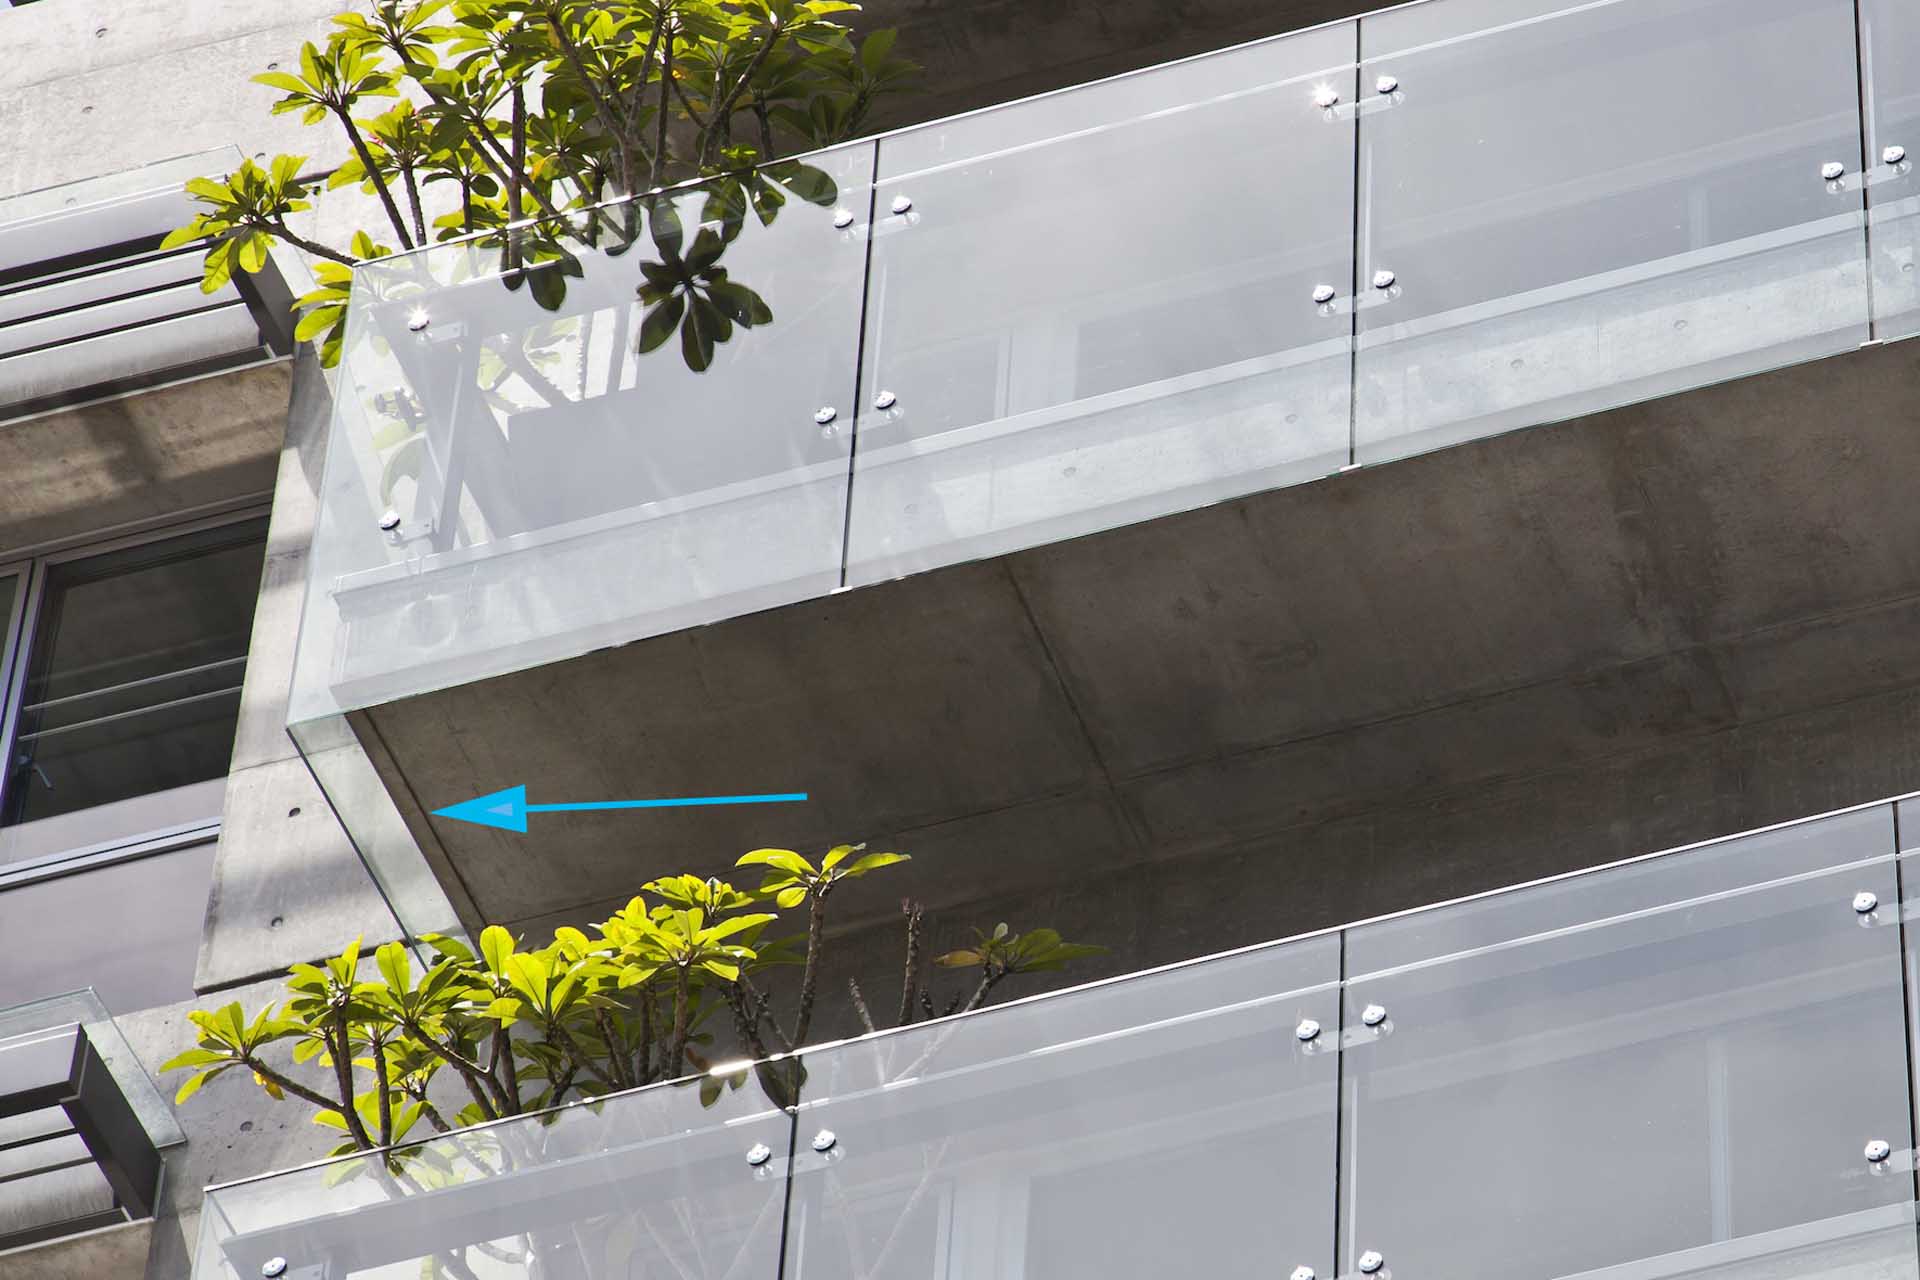 規劃玻璃欄杆避免汙染陽臺板面，並於底部設置滴水線建立第二道防汙機制。